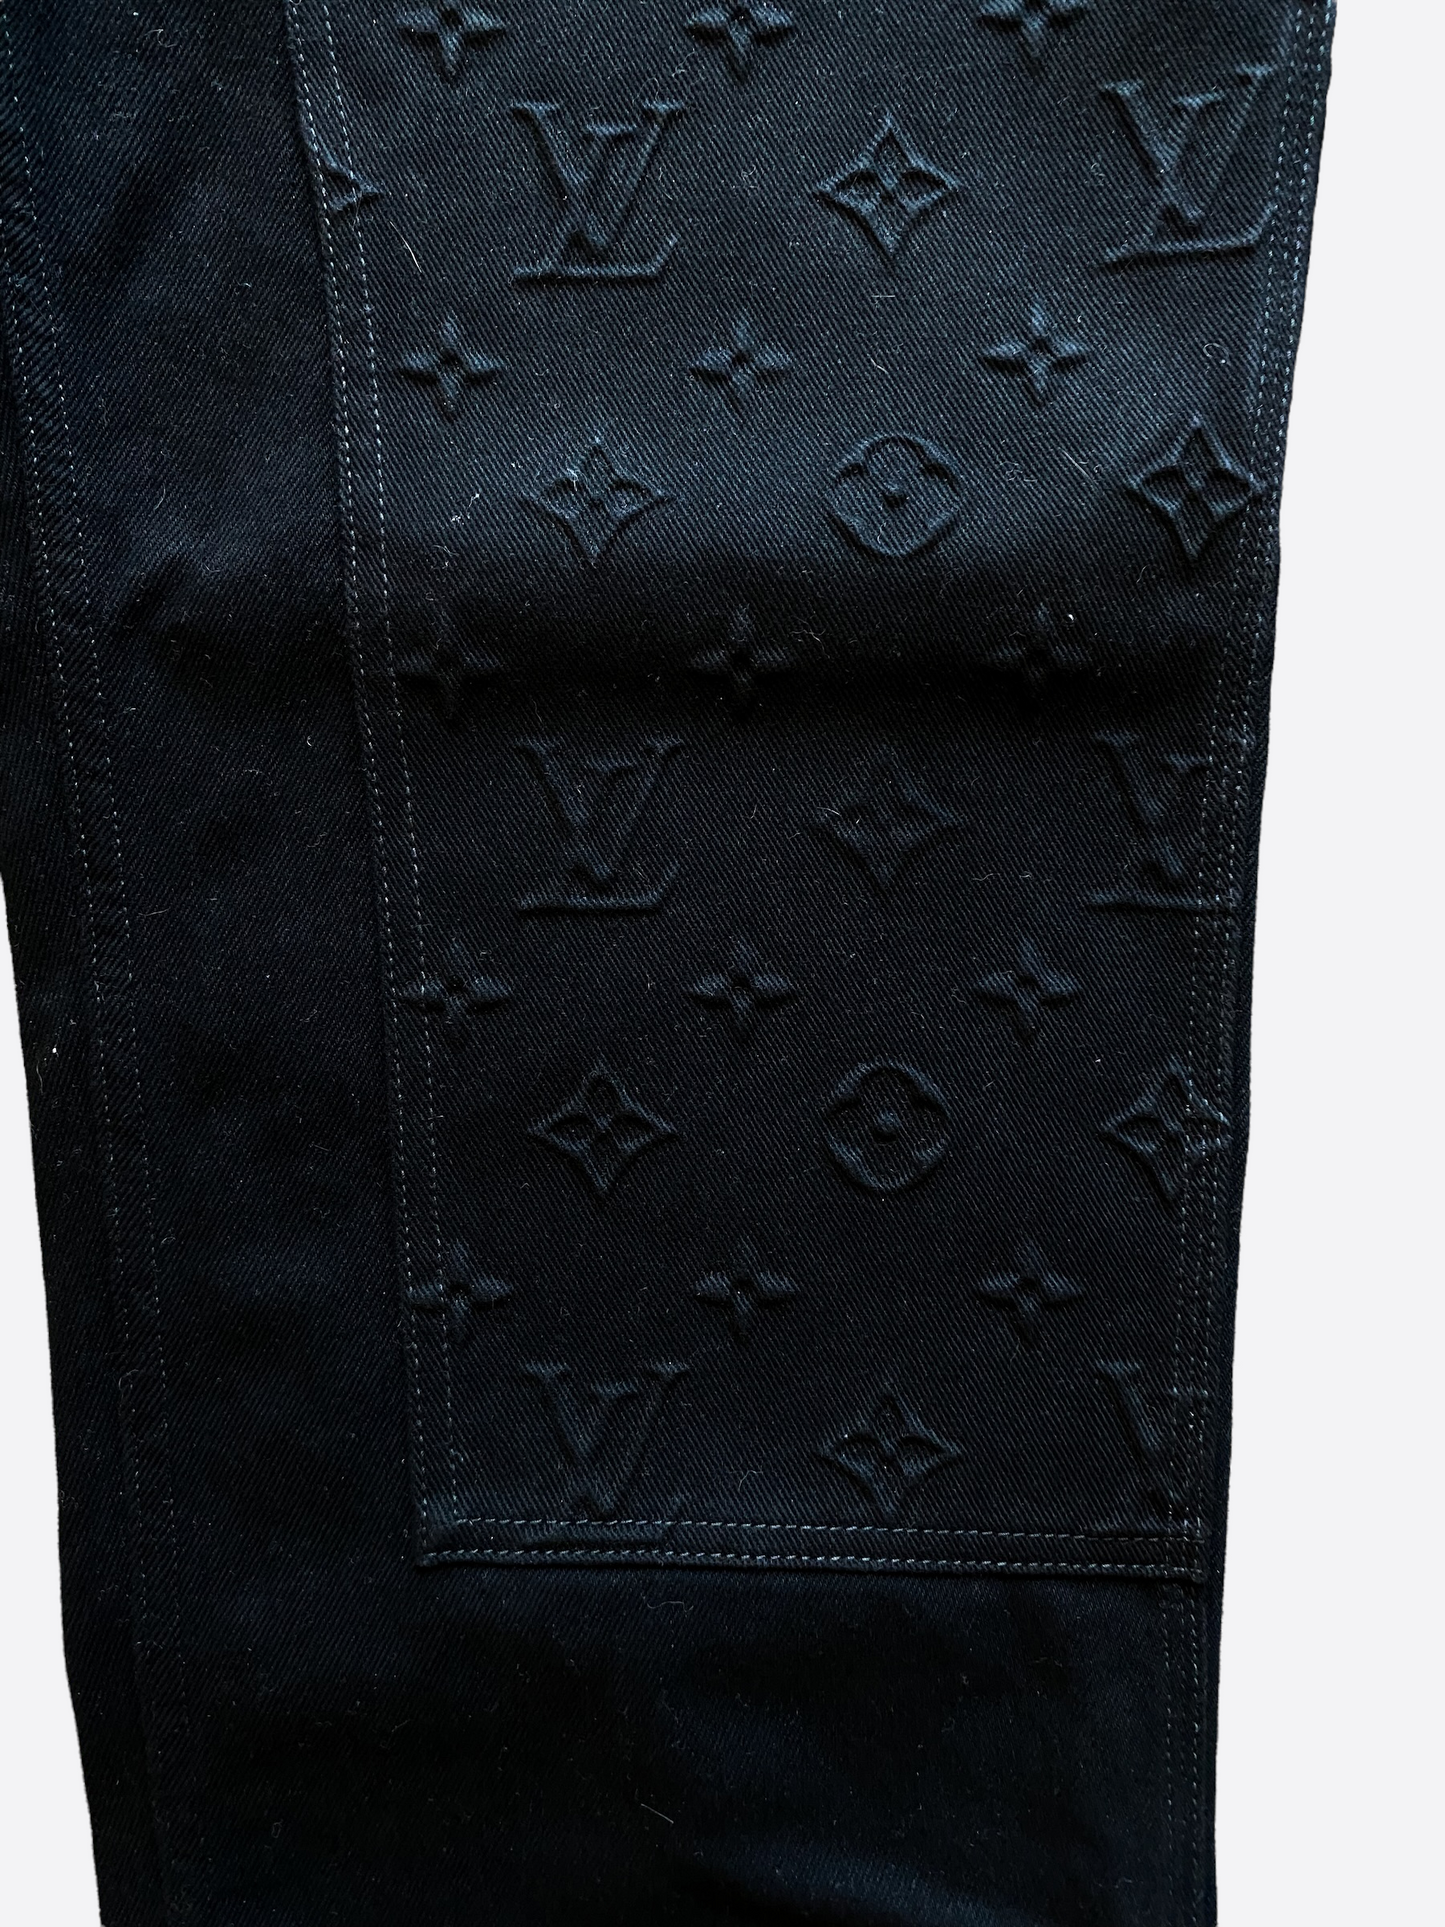 Louis Vuitton Bubble Damier Straight-Cut Pants BLACK. Size 34